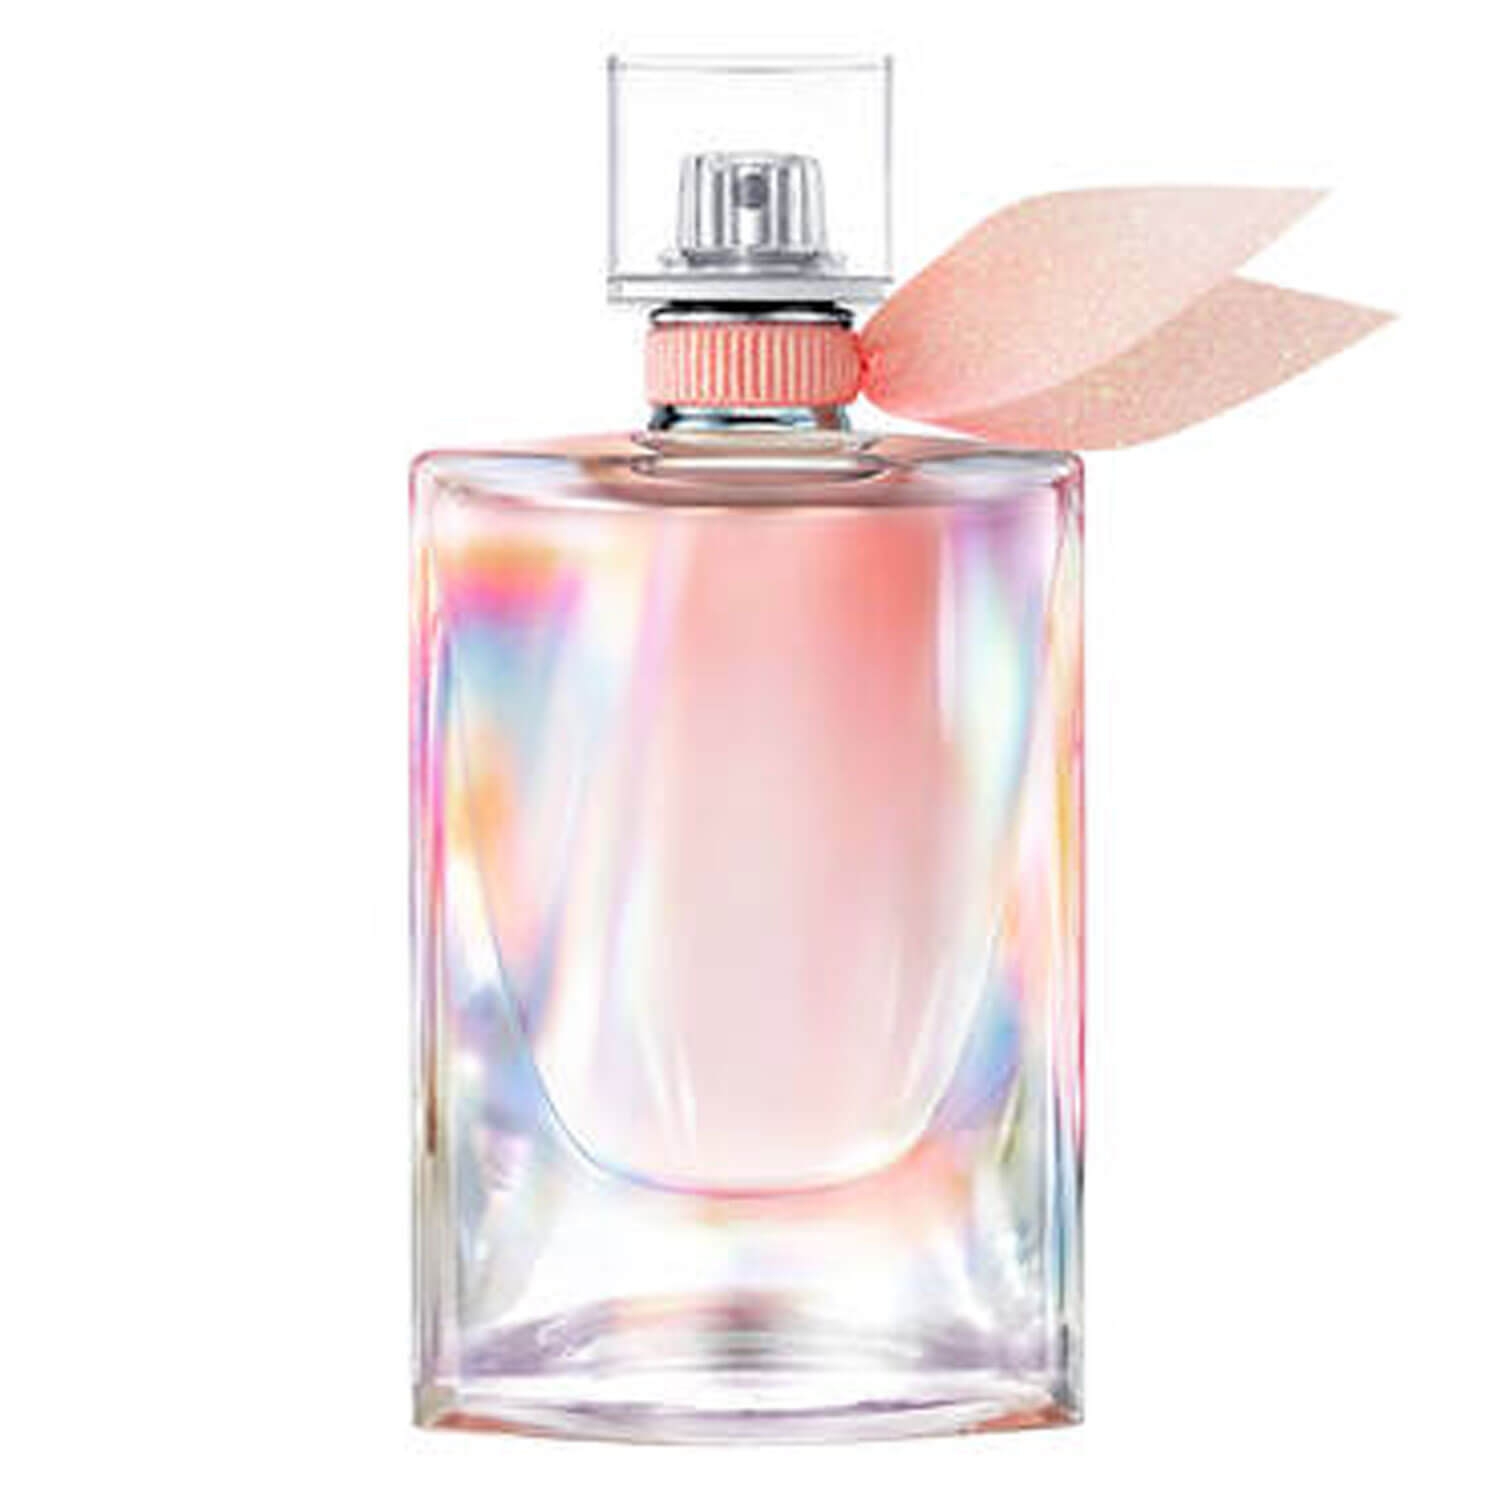 Produktbild von La Vie est Belle - Soleil Cristal Eau de Parfum